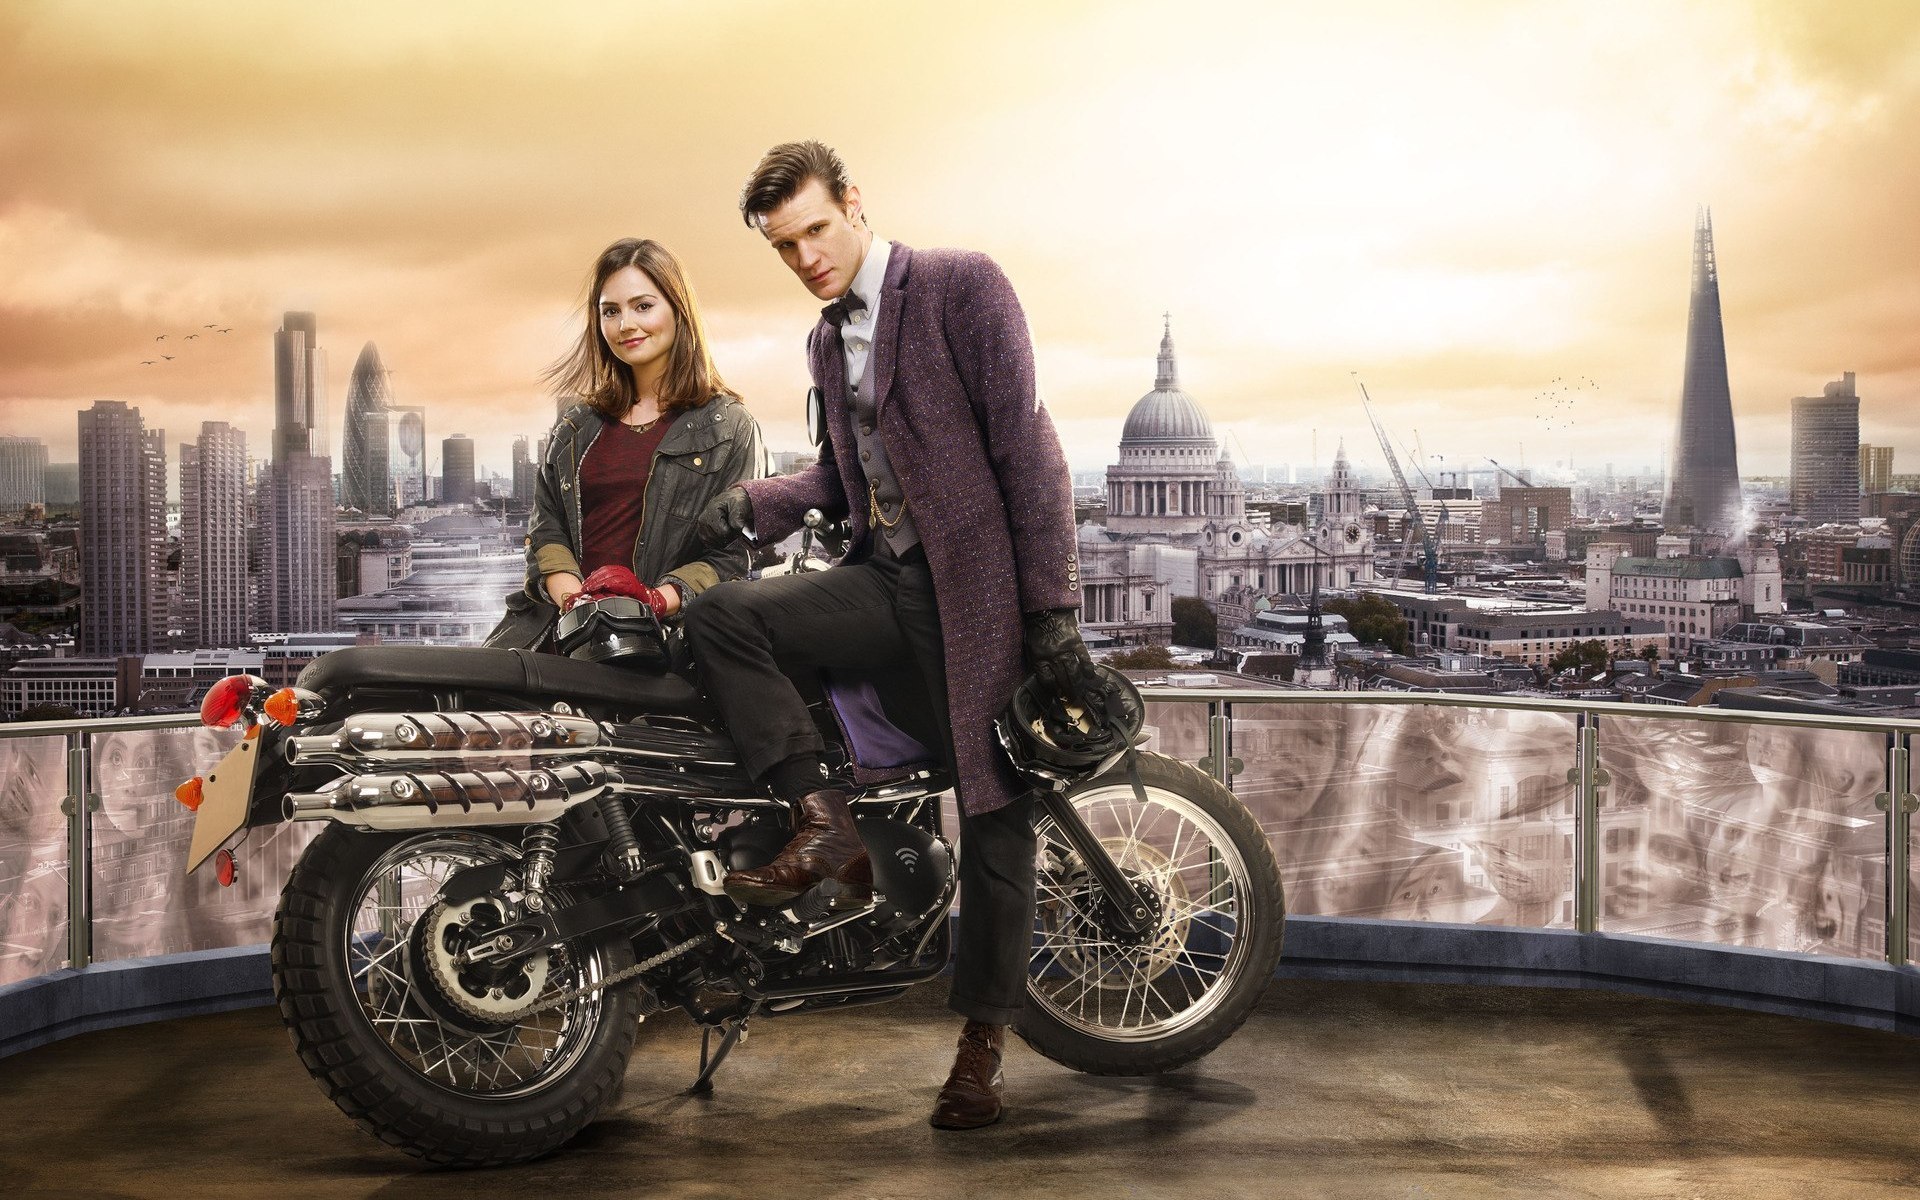 Картинки Доктор, который, матовый кузнец, jenna-louise coleman, мотоцикл, лондон фото и обои на рабочий стол